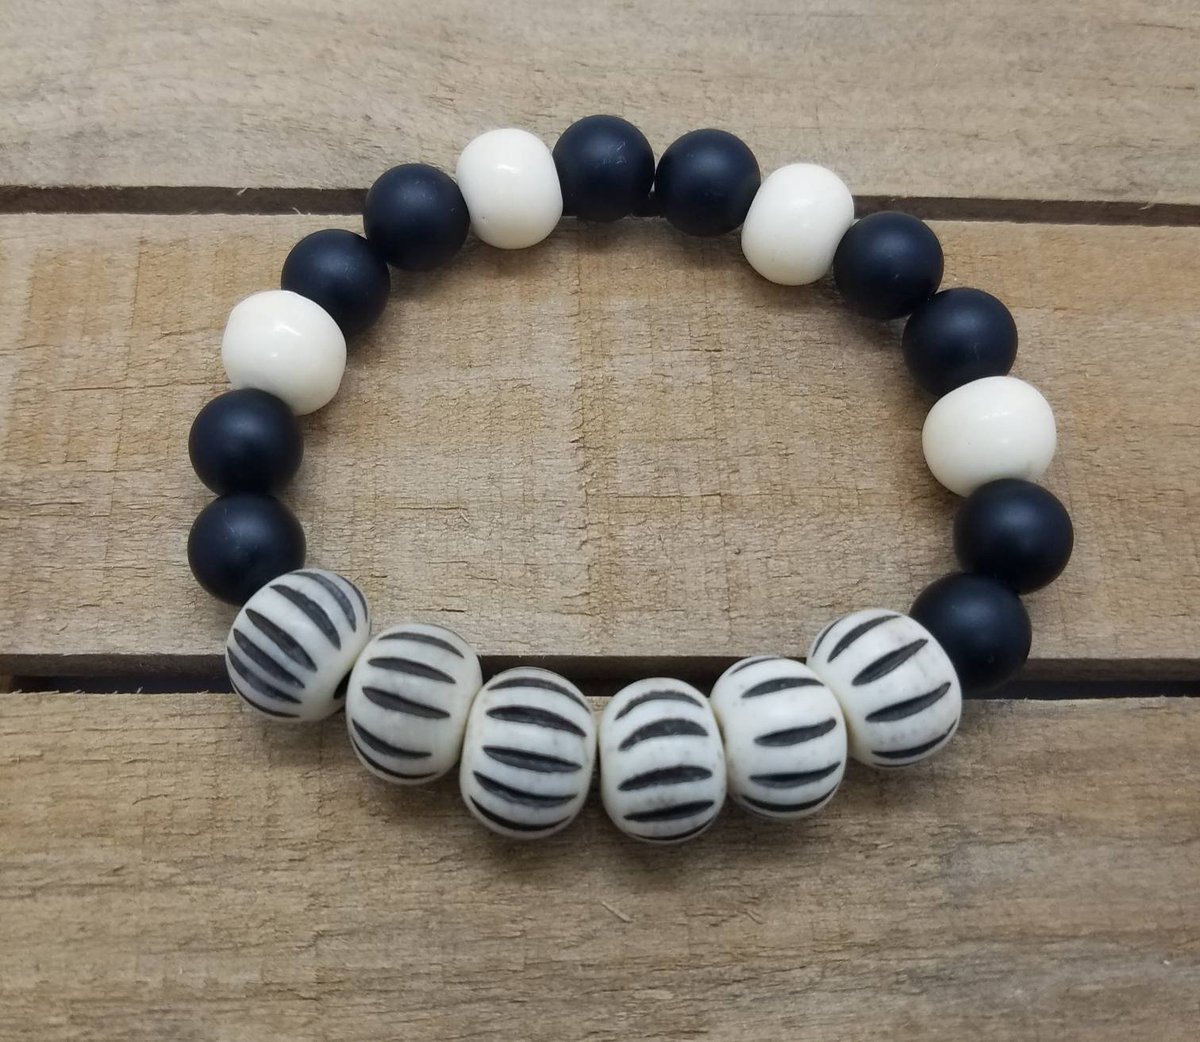 Excited to share the latest addition to my #etsy shop: Ivory and onyx bone beaded bracelet
#Doodlebugsbydevida #shopsmall #handmade #bonebeads #stretch etsy.me/2WogCWq